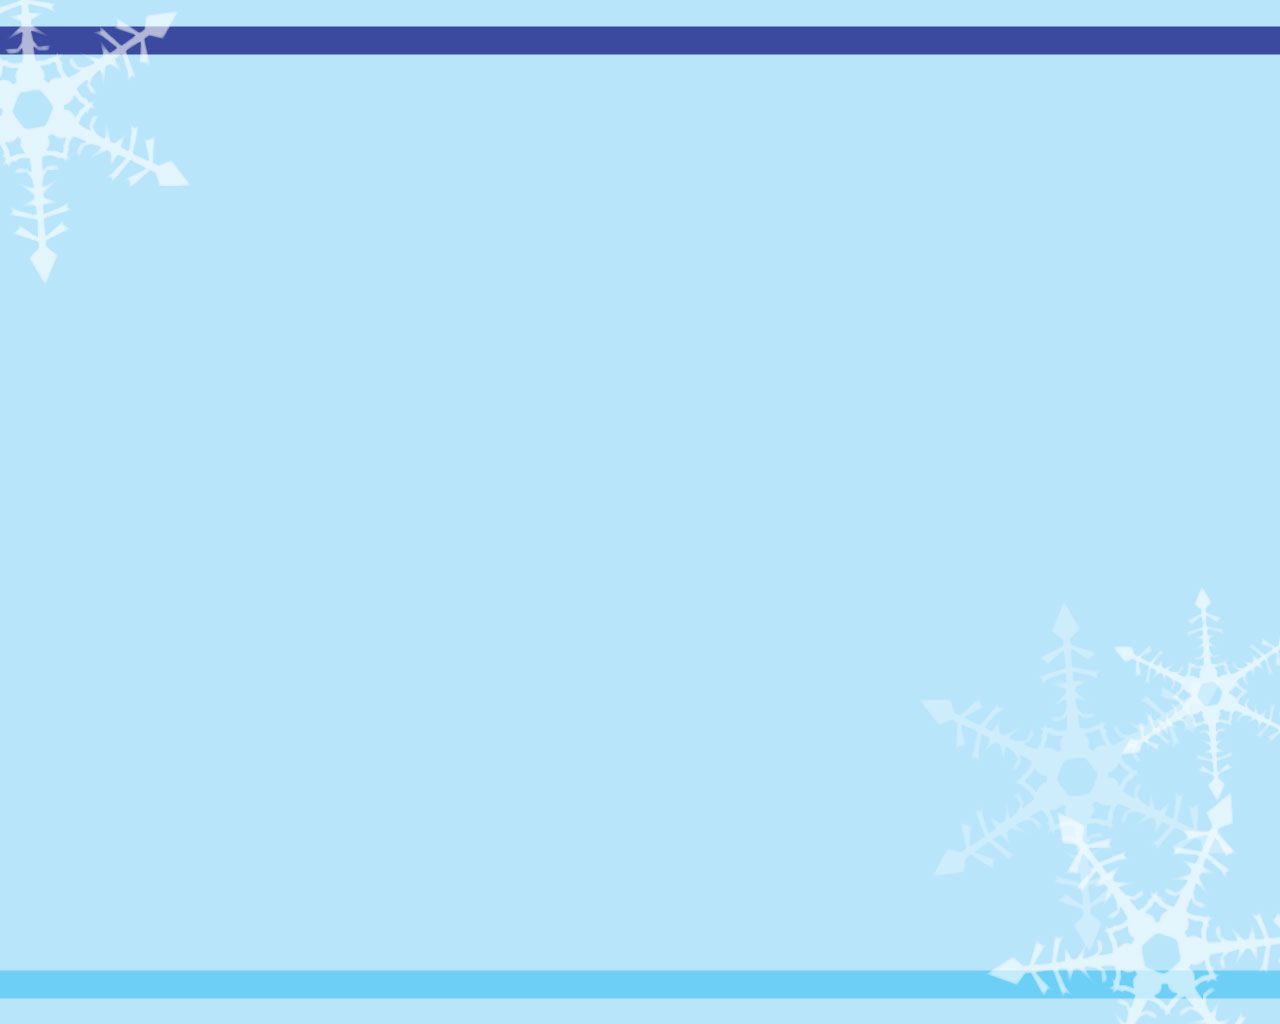 Christmas Theme Wallpaper cho Powerpoint: Giáng sinh đã đến, hãy nhanh tay cập nhật ngay những hình ảnh Giáng sinh lung linh để trang trí cho Powerpoint của mình. Với những mẫu thiết kế độc đáo, bạn chắc chắn sẽ tạo được không khí sôi động cho bài thuyết trình của mình.